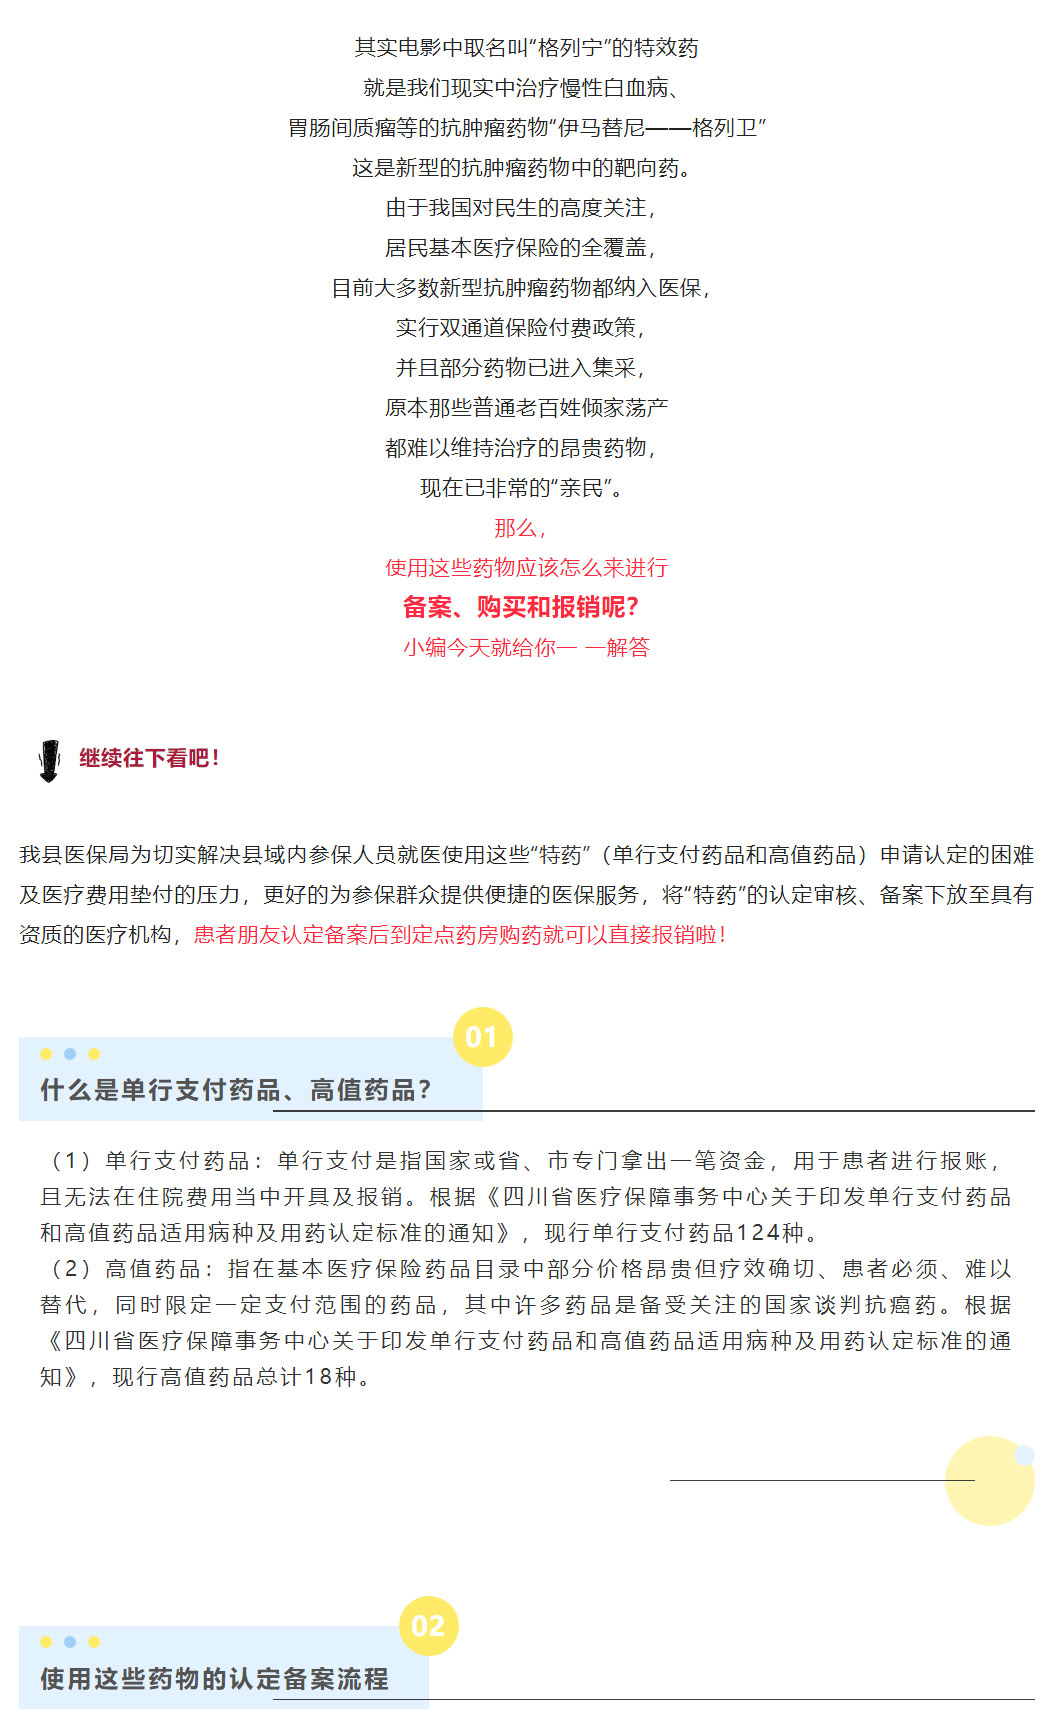 【医保政策-】乐至县人民医院单行支付药品、高值药品认定备案流程_05.jpg